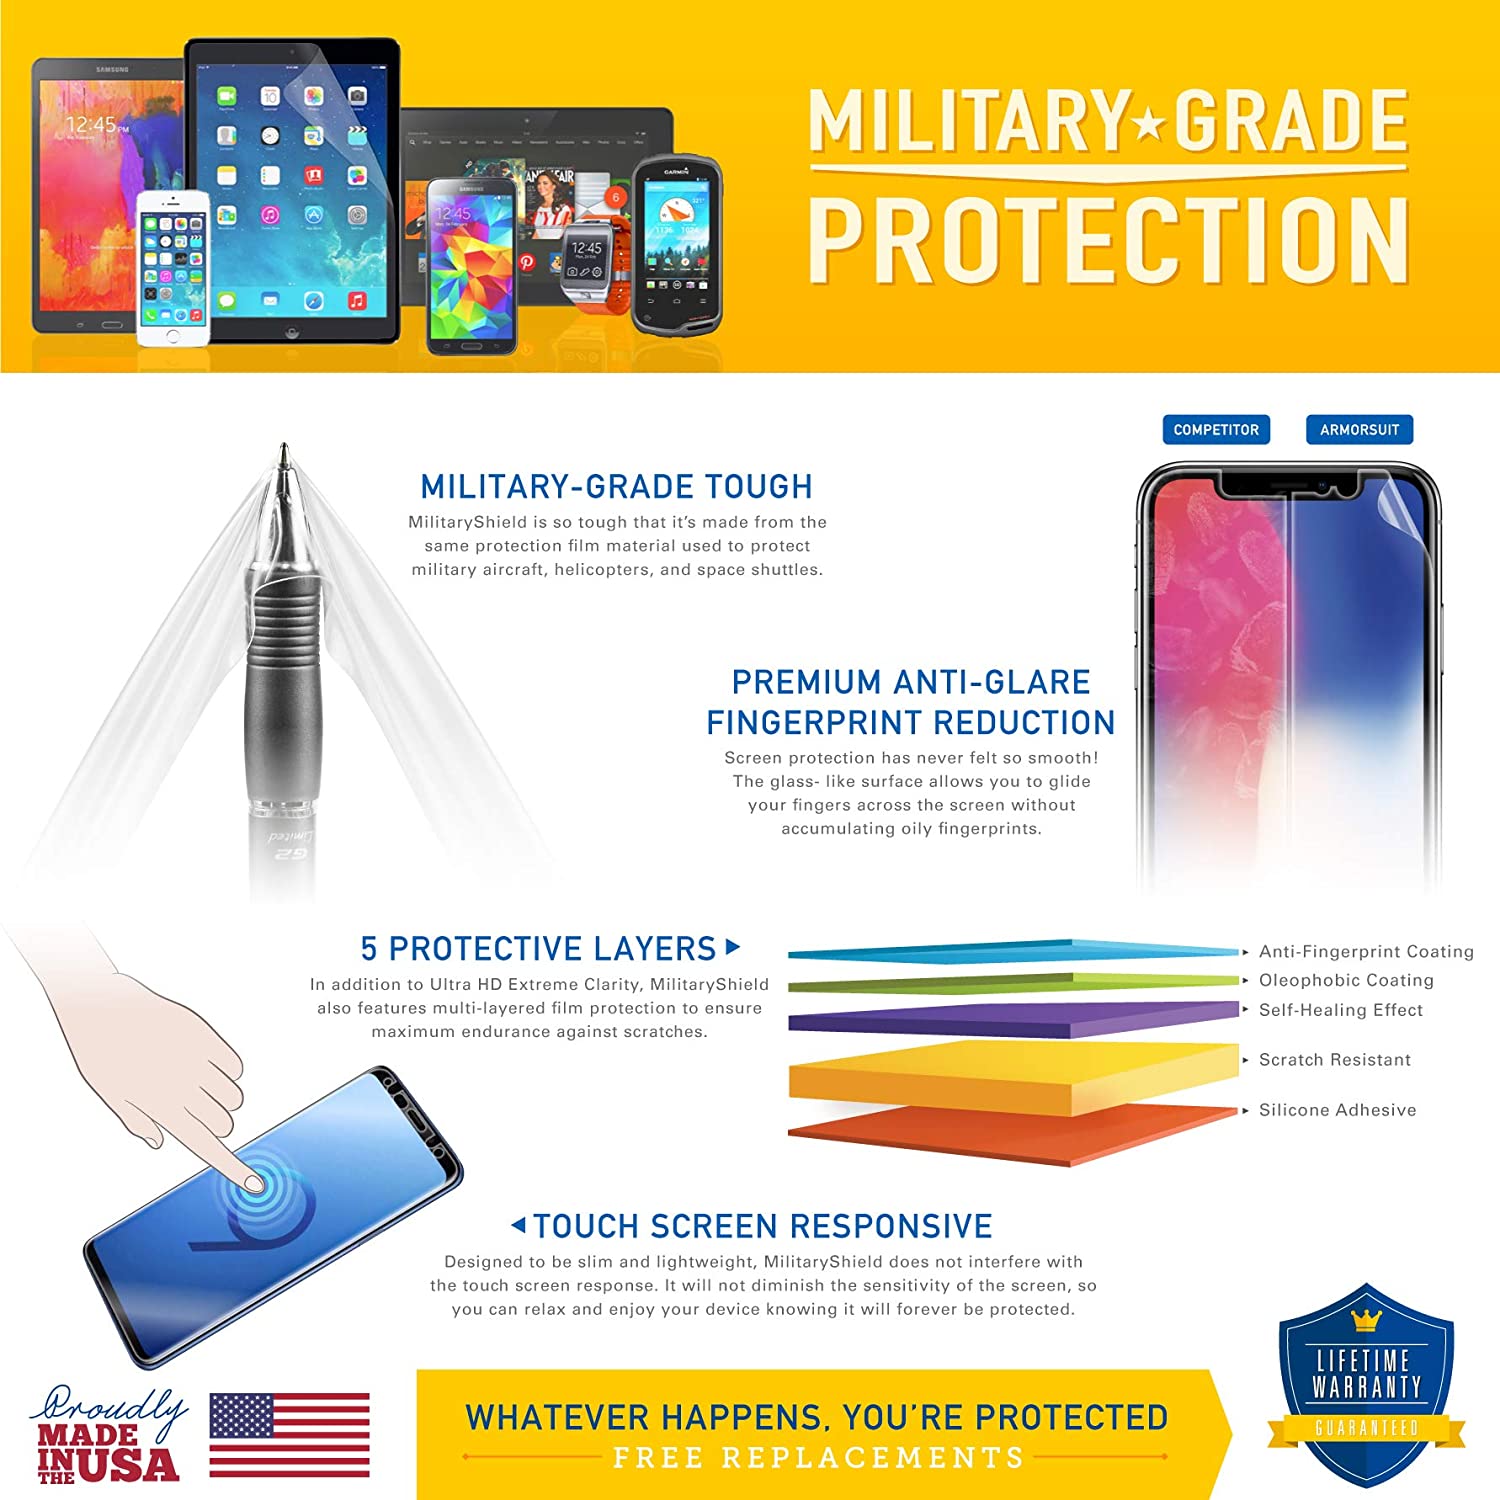 [2 Pack] Nokia E75 Screen Protector